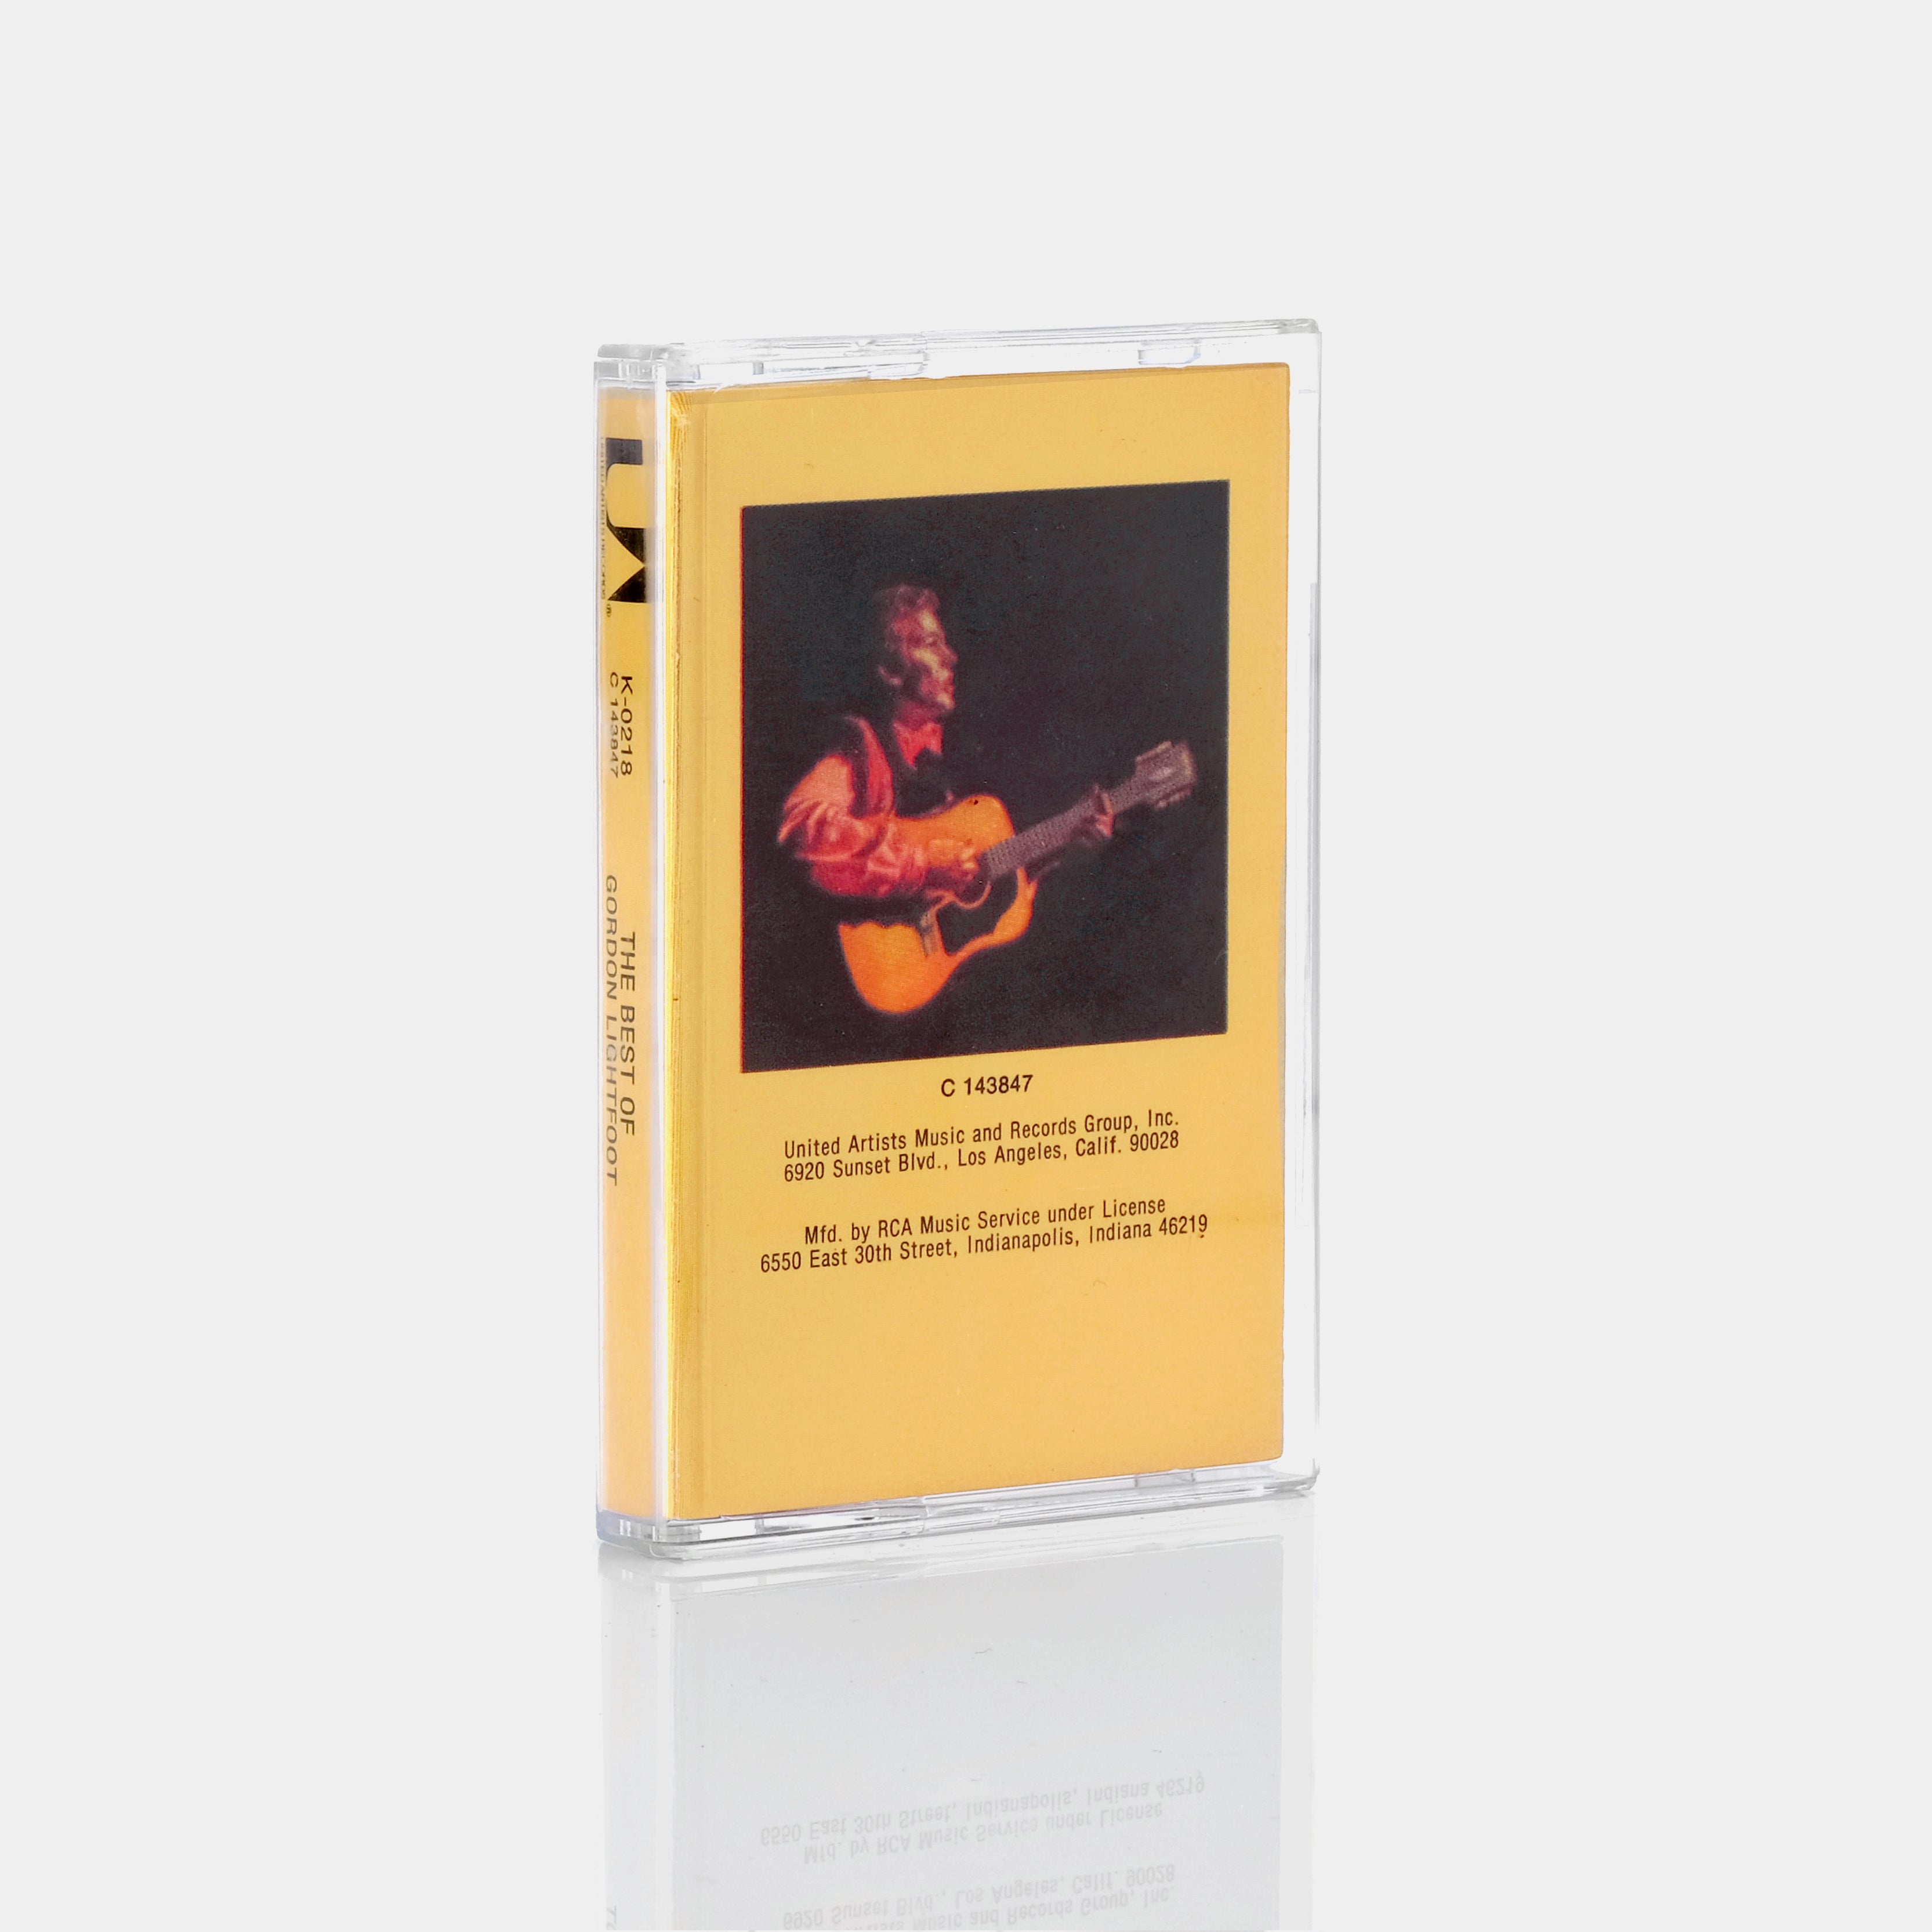 Gordon Lightfoot - The Best Of Gordon Lightfoot Cassette Tape